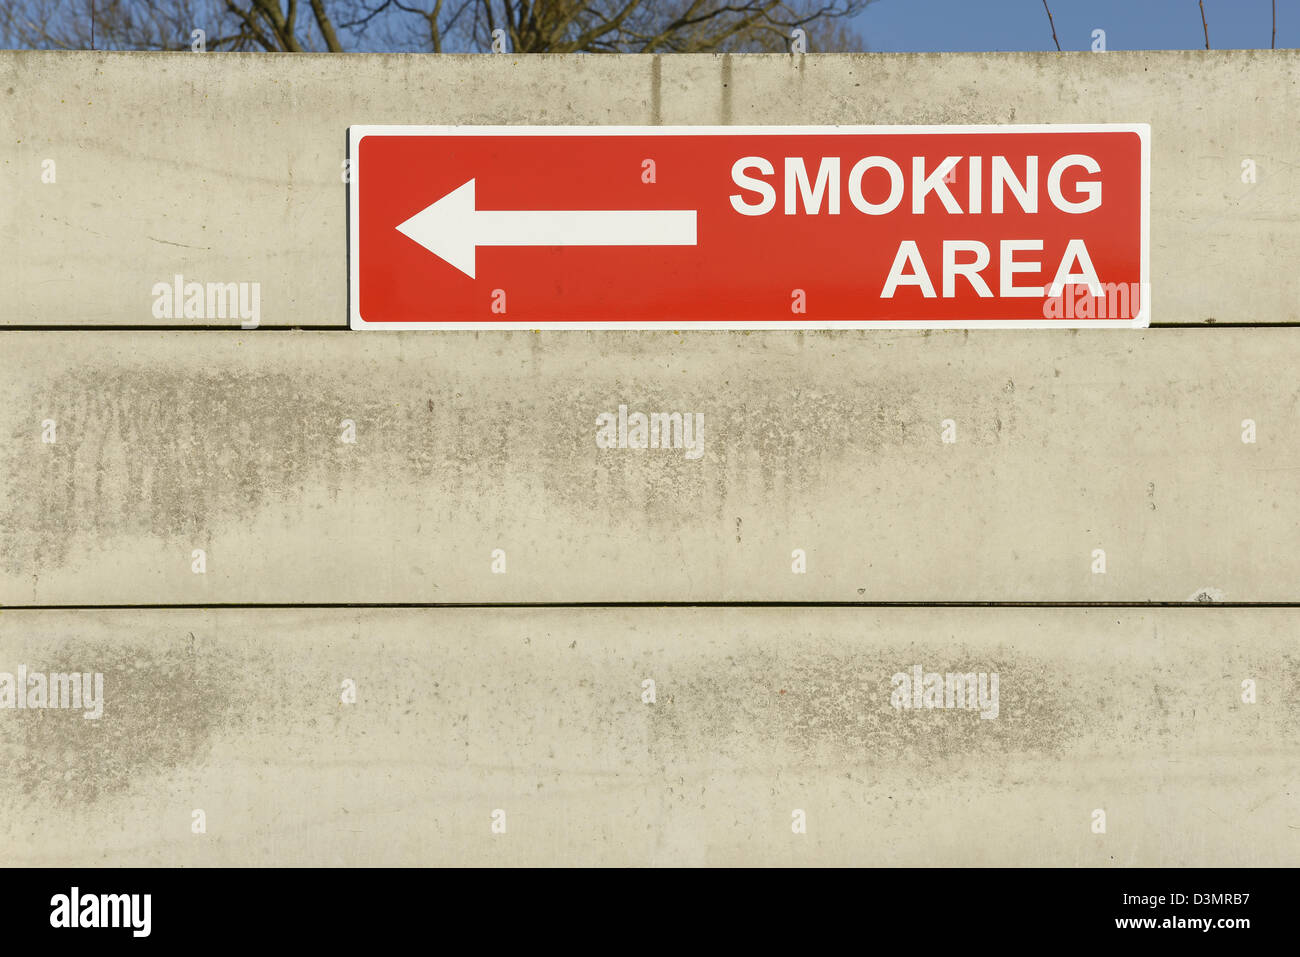 Zona de fumadores señal de flecha en una pared. Foto de stock